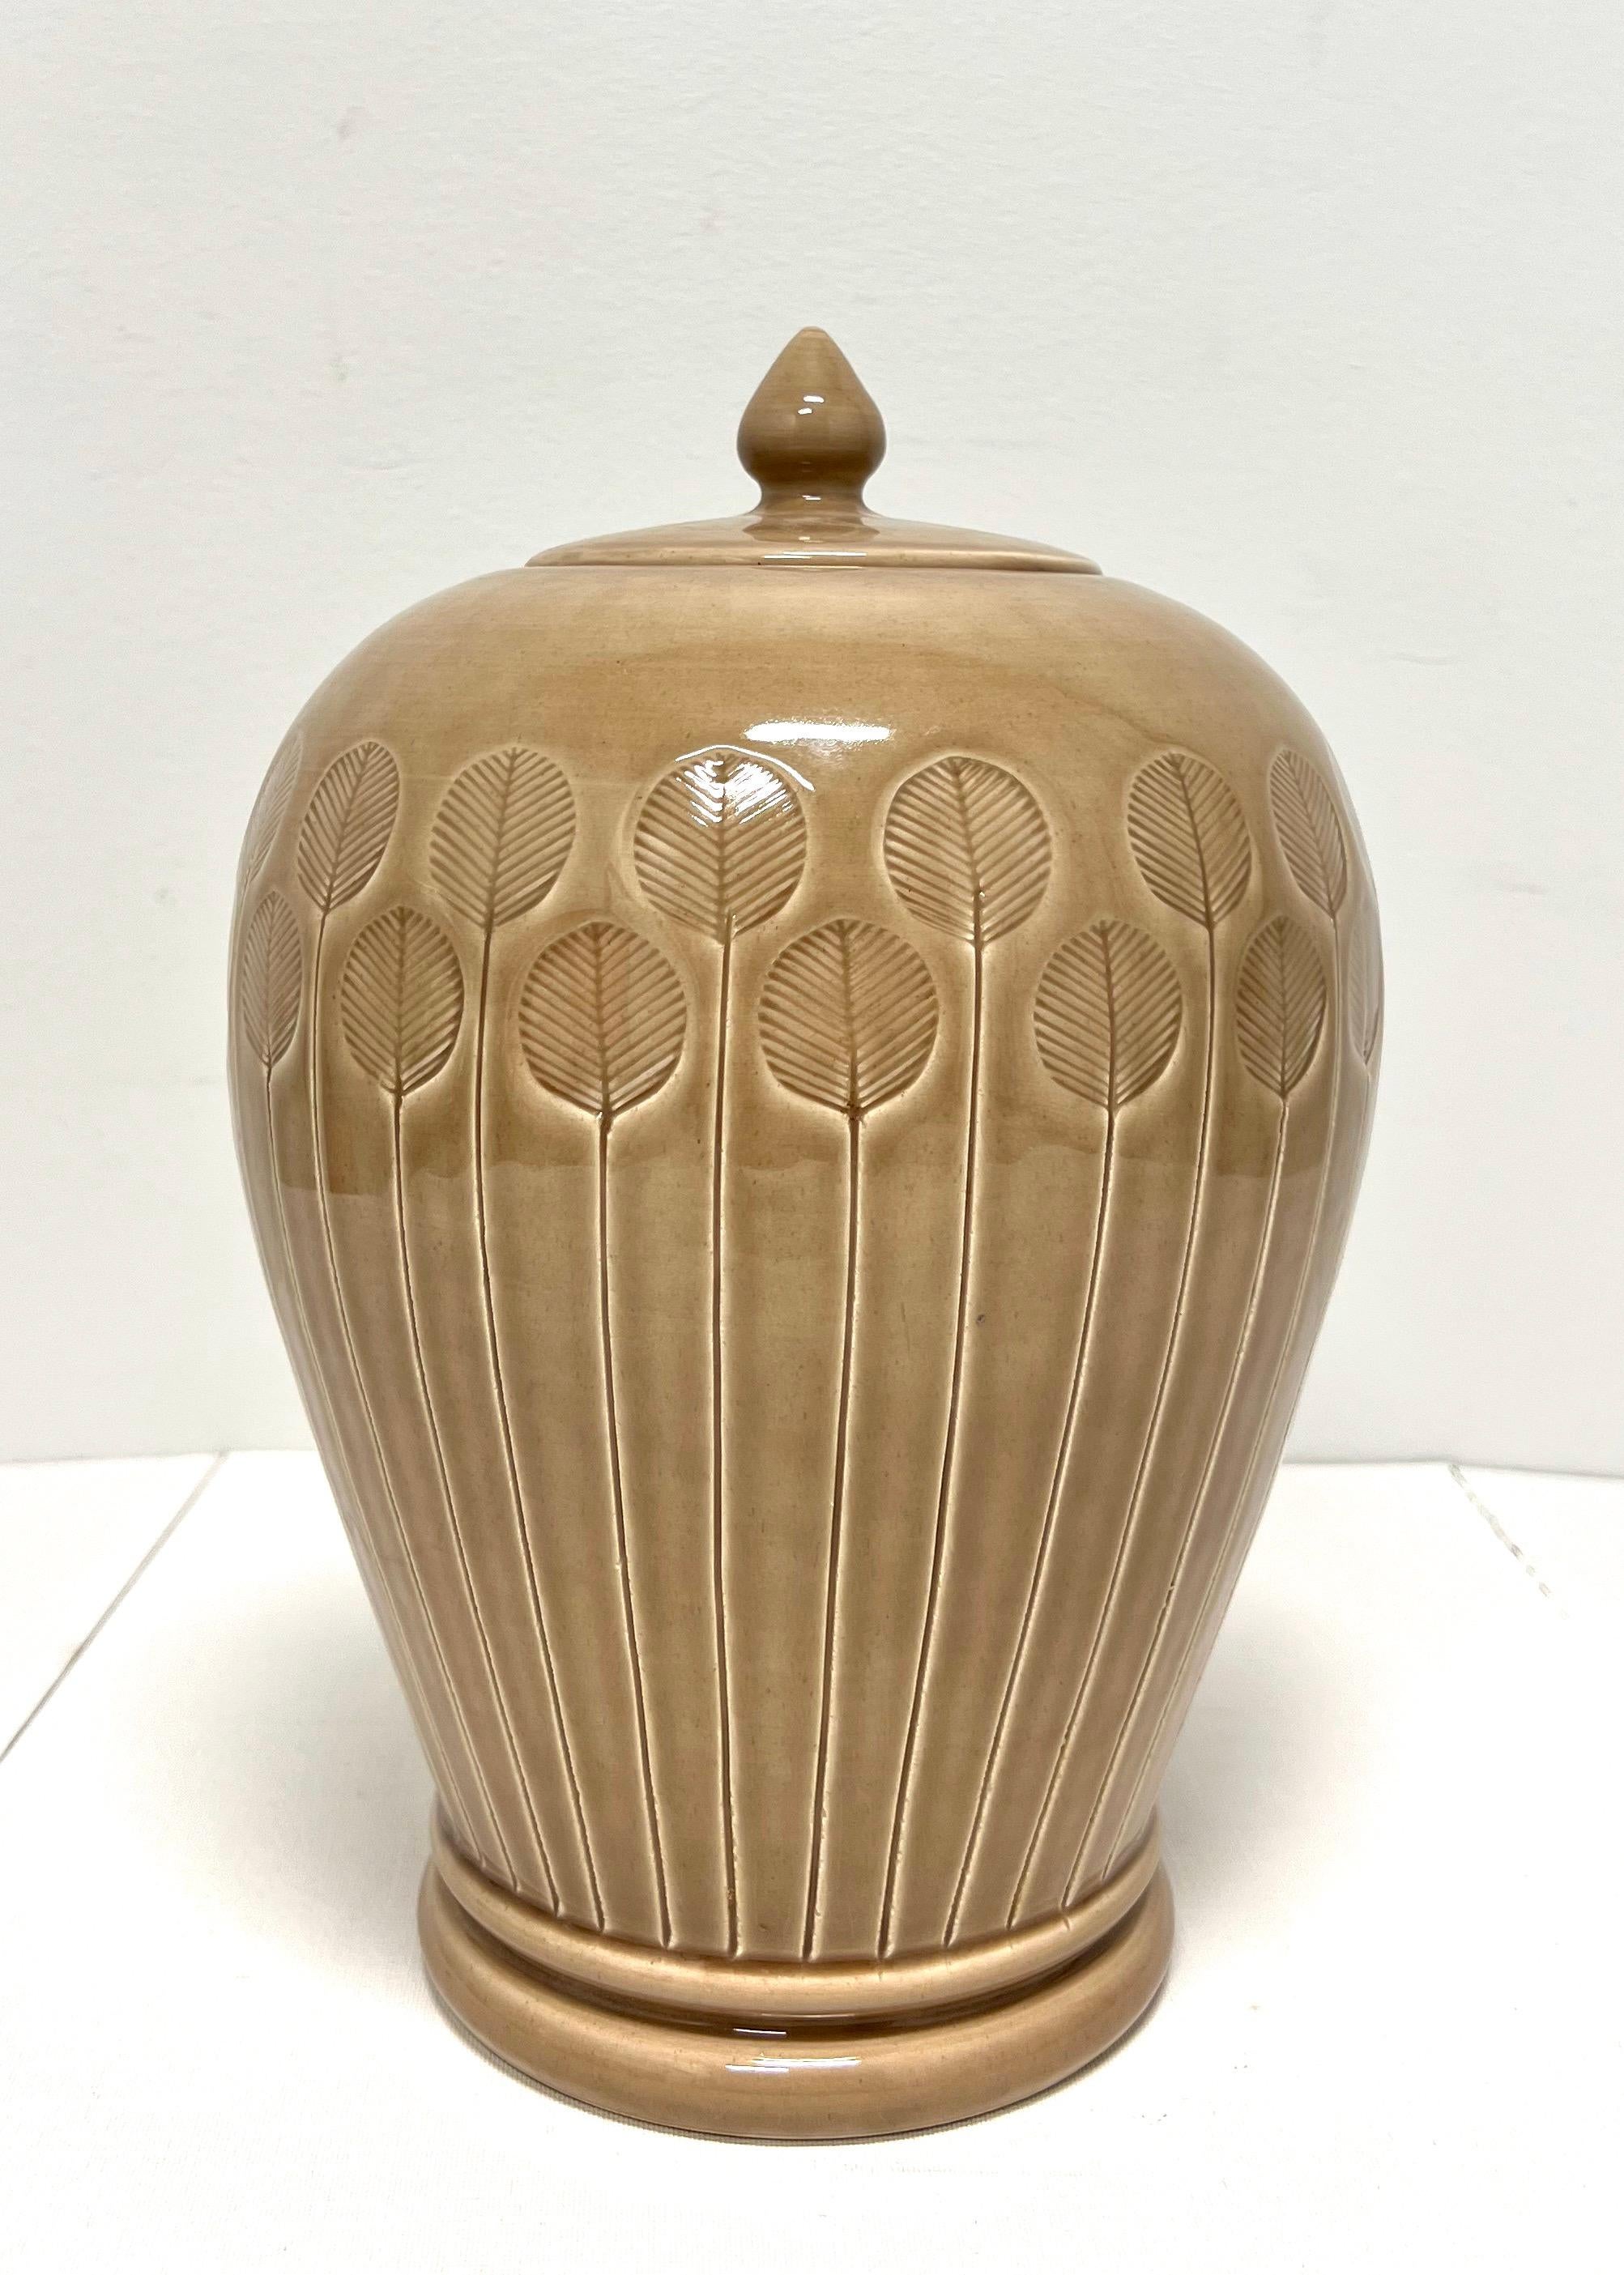 Un pot de gingembre en céramique de style abstrait moderne avec couvercle, sans marque. De couleur marron clair, en forme d'urne, avec des fleurs abstraites sur toute la surface et un petit couvercle à poignée ronde. Probablement fabriqué en Chine,